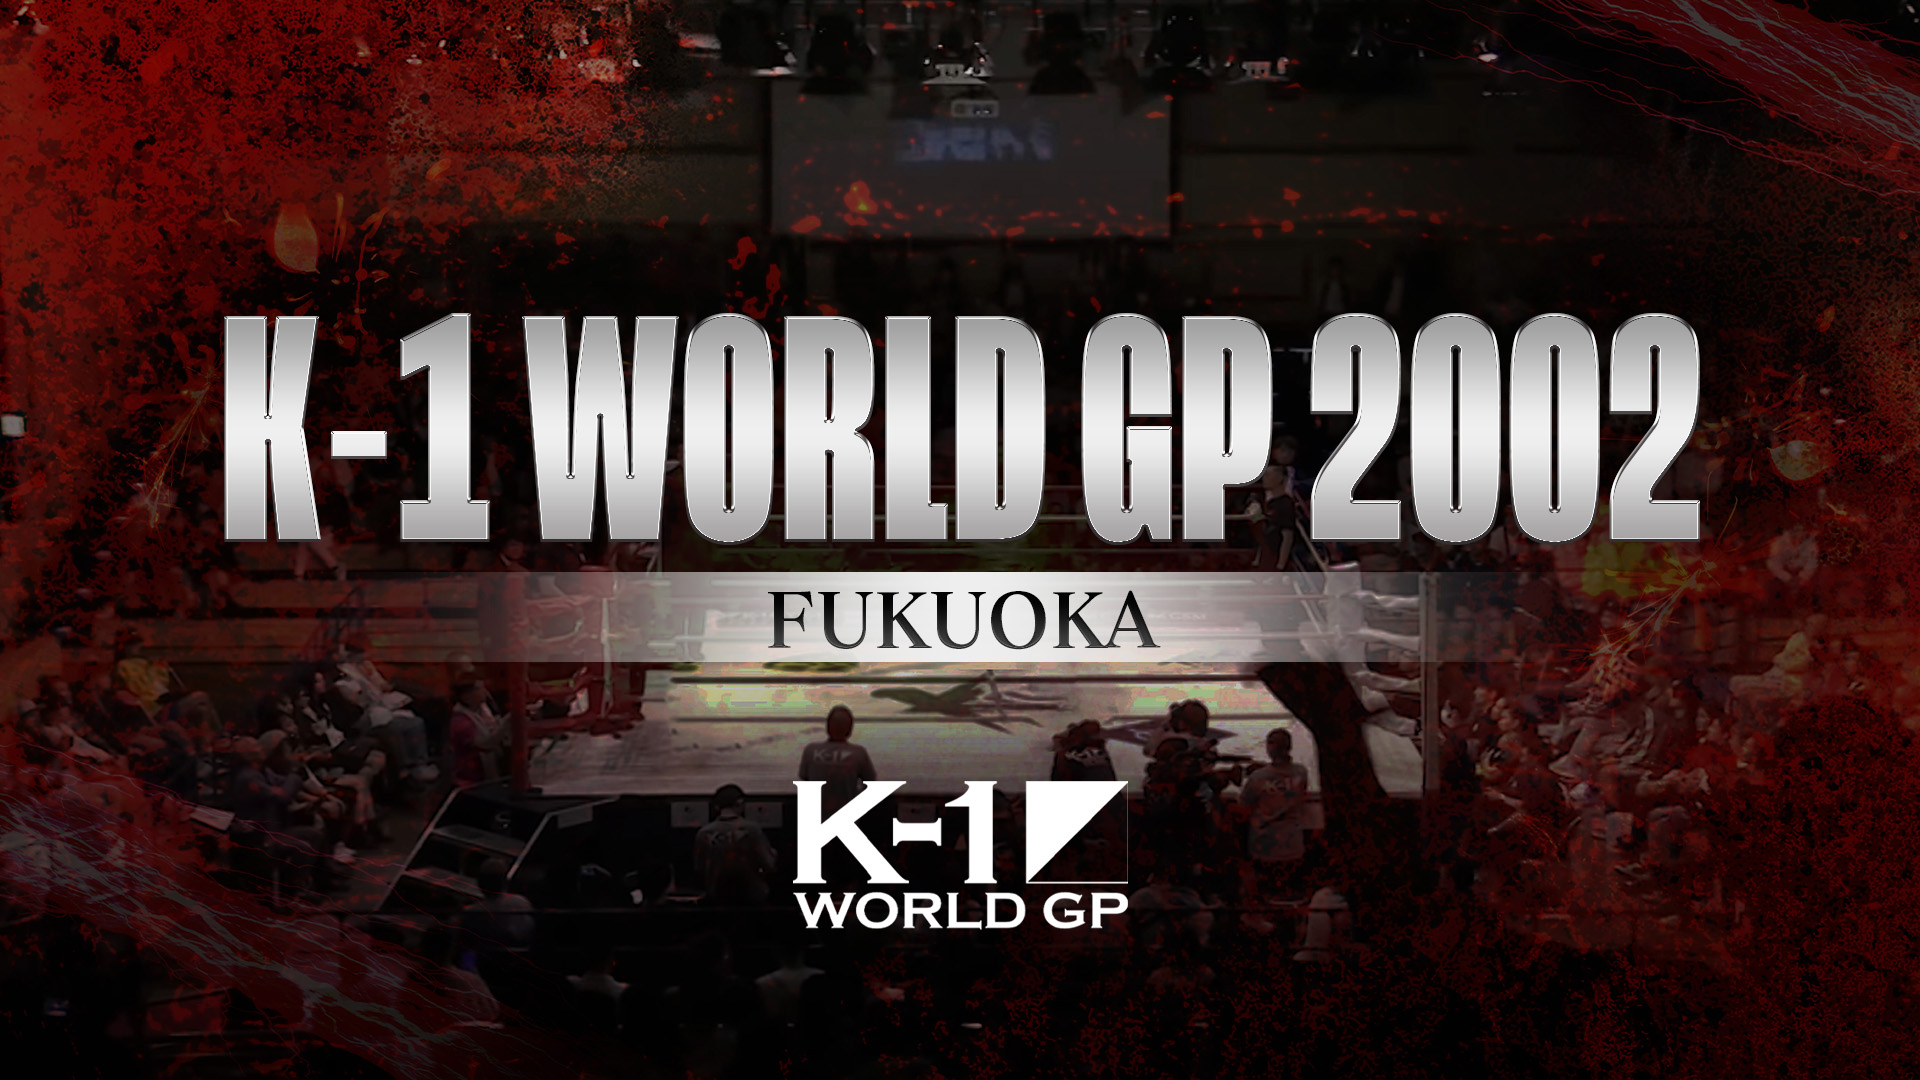 K-1 World GP 2002 Fukuoka(格闘技 / 2002) - 動画配信 | U-NEXT 31日間無料トライアル